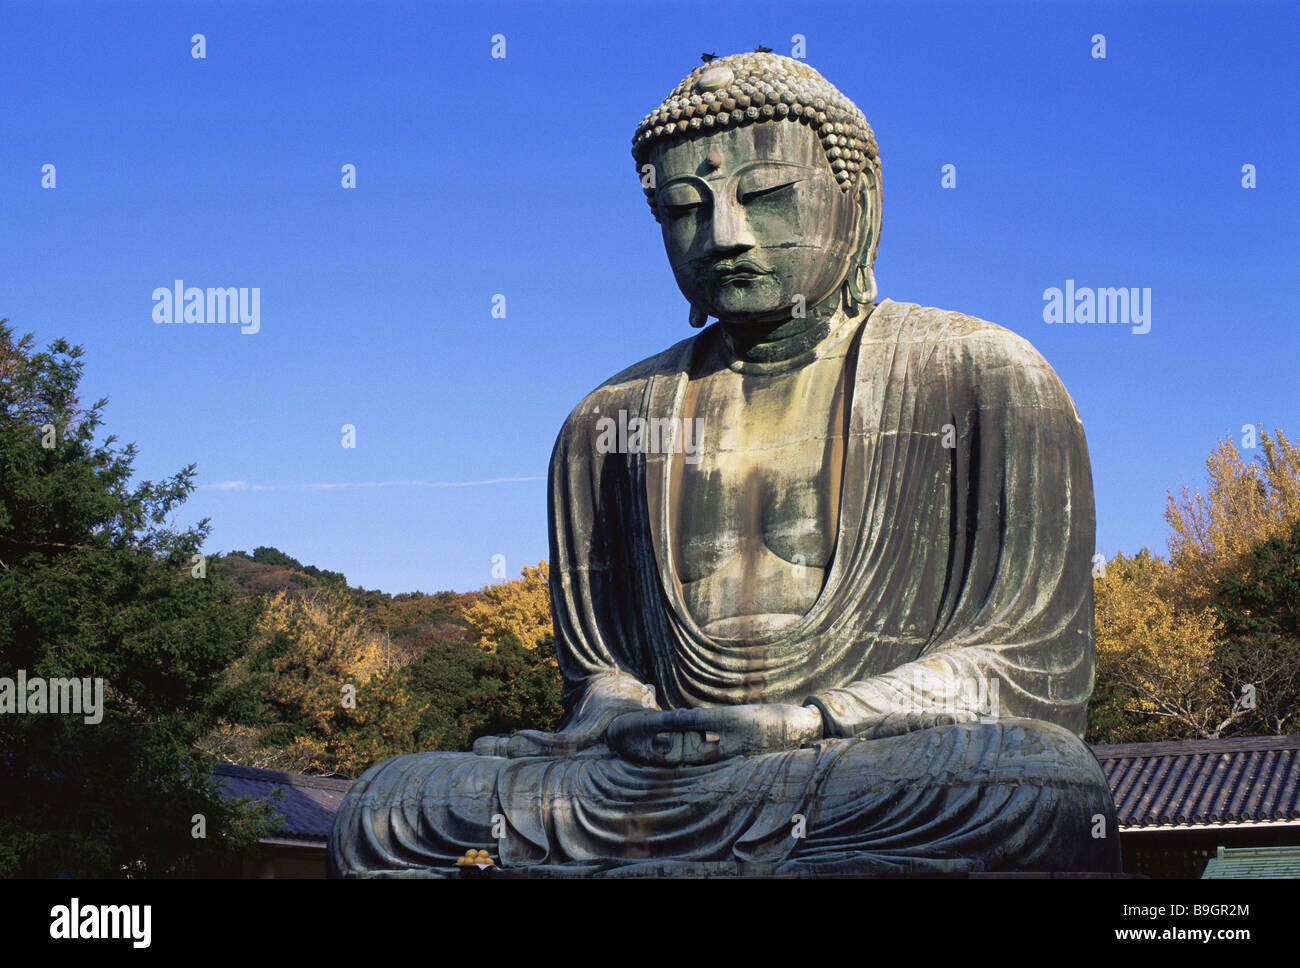 Grand Bouddha de Kamakura au Japon 'Daibutsu' Asie série automne Honshu Tokyo Buddhastatue statue statue statue de bronze attraction vue Banque D'Images